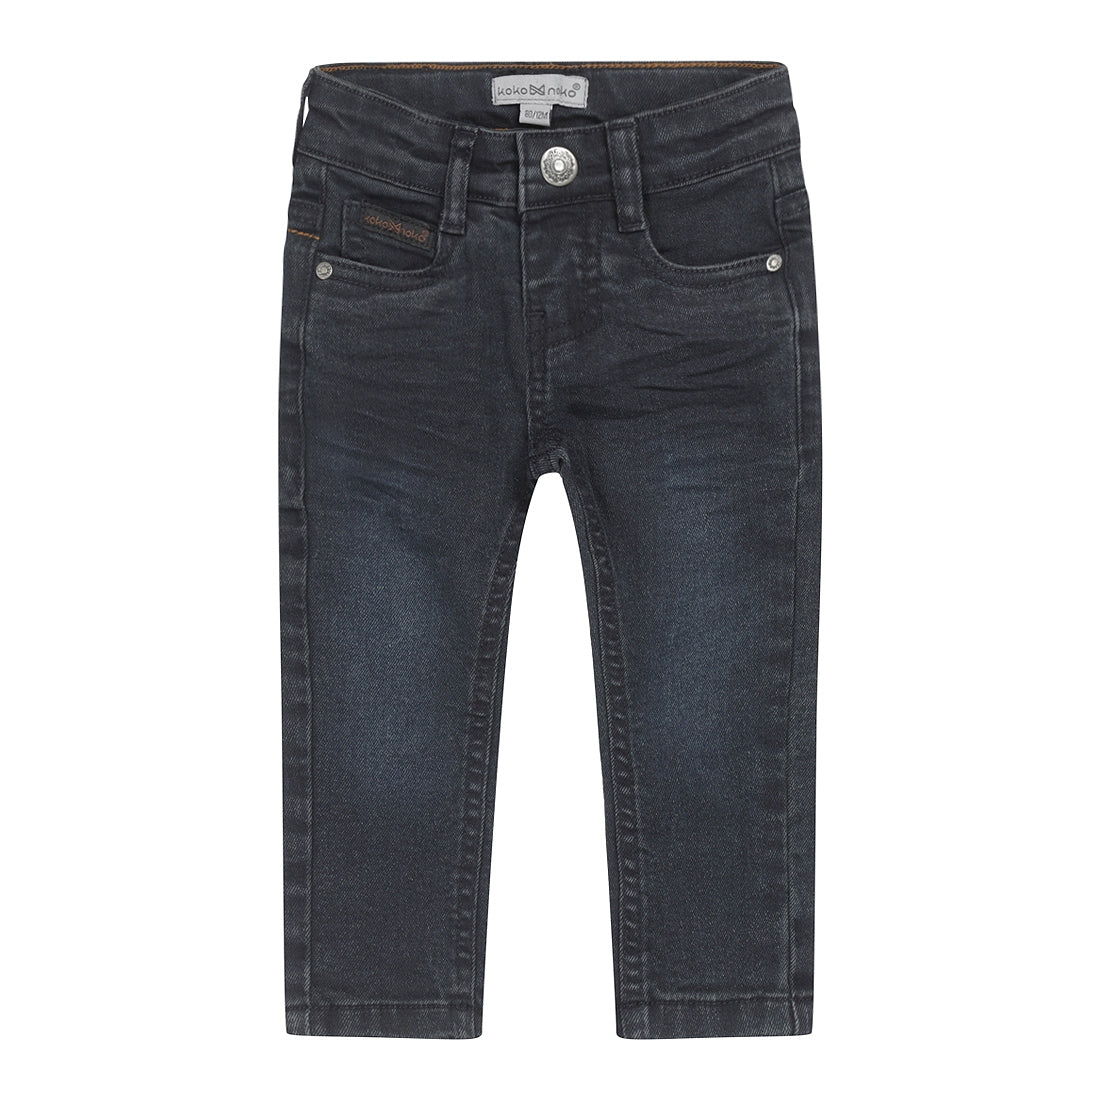 Jongens Jeans skinny van Koko Noko in de kleur Blue jeans in maat 128.